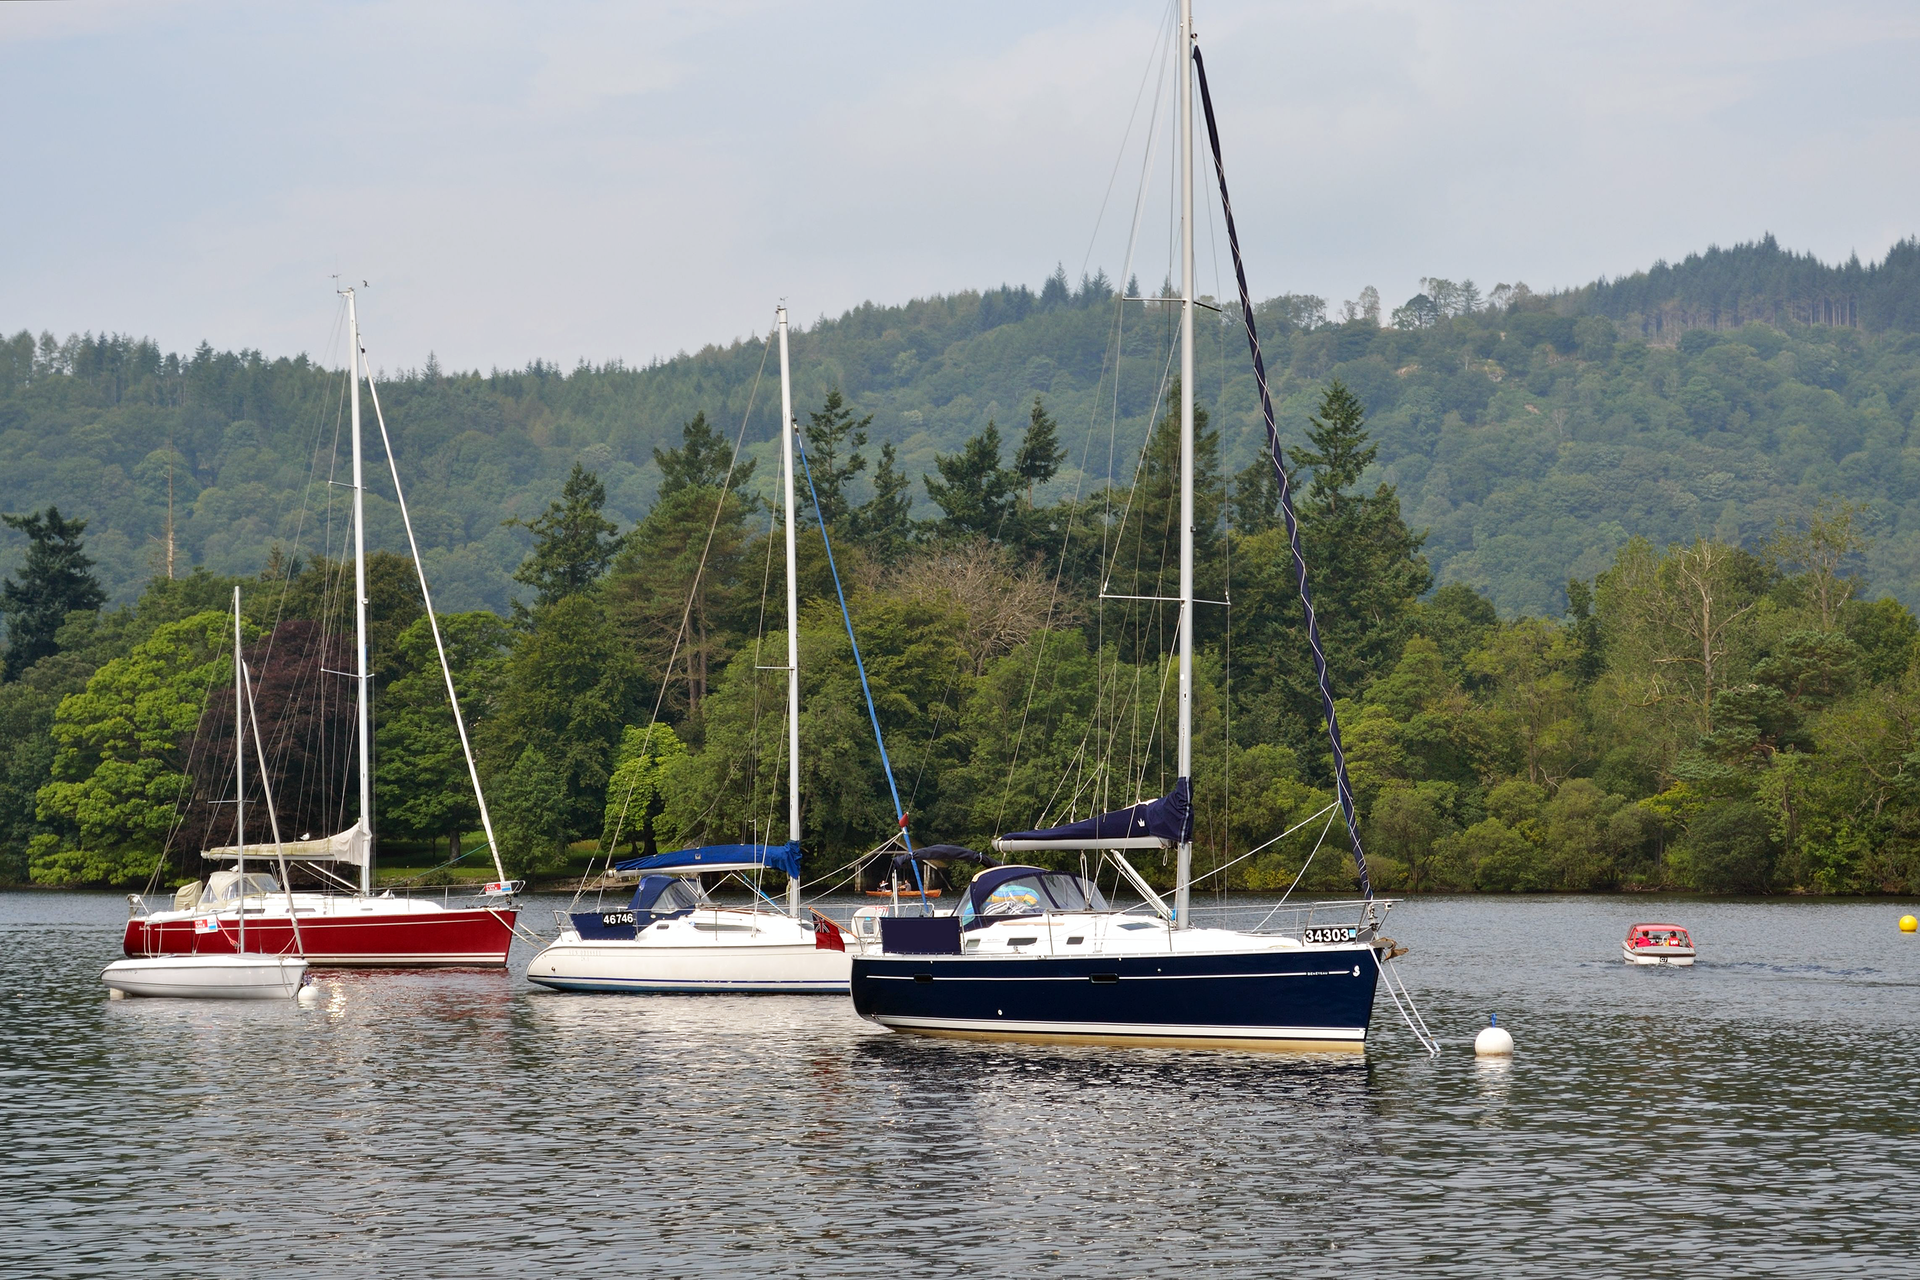 Fotografia prezentująca trzy jachty na jeziorze Mazurskim. W tle widać rosnące na brzegu drzewa. Jachty posiadają wysokie maszty z olinowaniem.